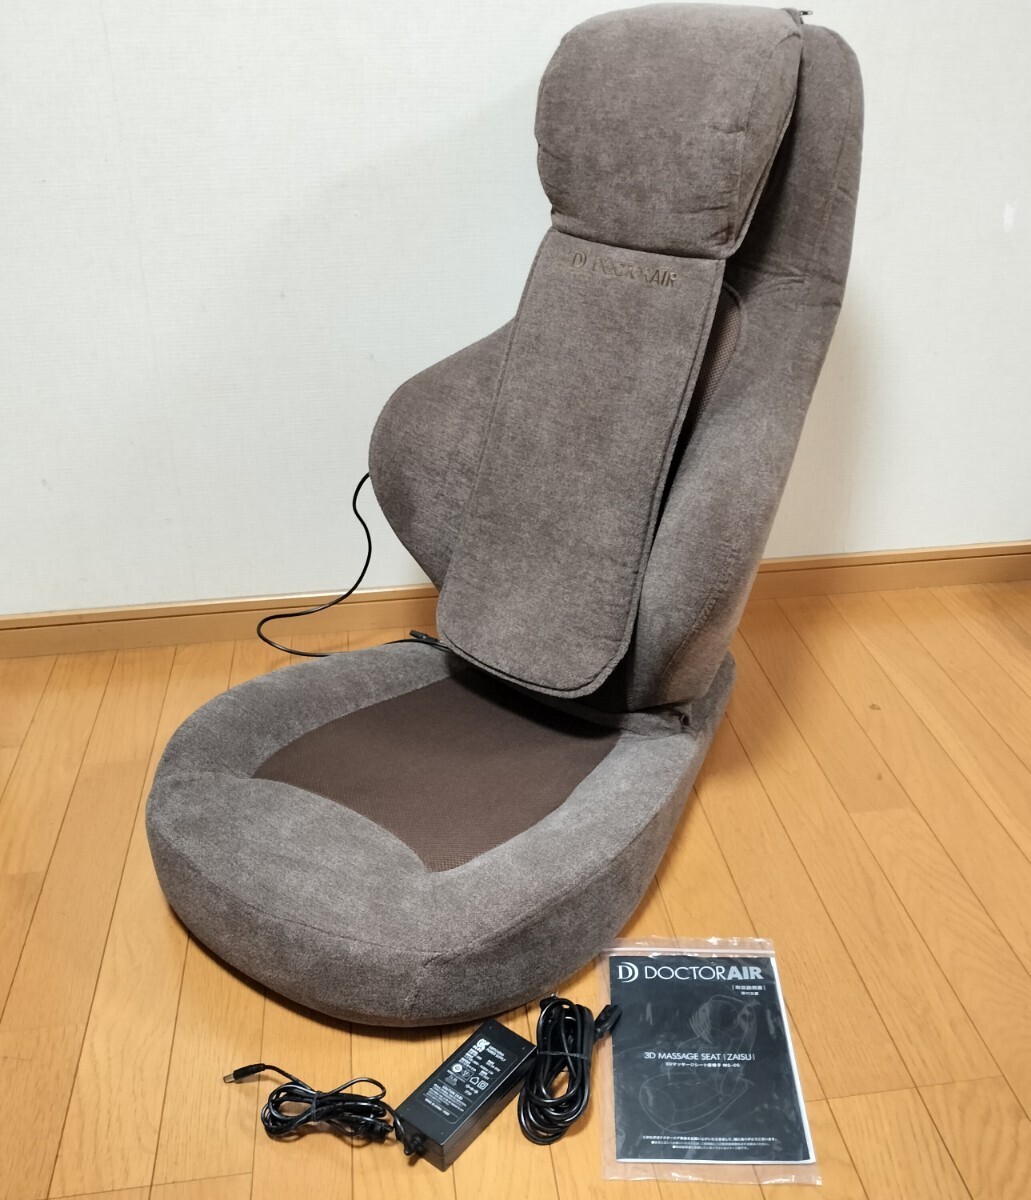 ドクターエア 3D マッサージシート 座椅子 MS-05 ブラウン/リクライニング 首 肩 背中 腰 (マッサージチェア マッサージ機)